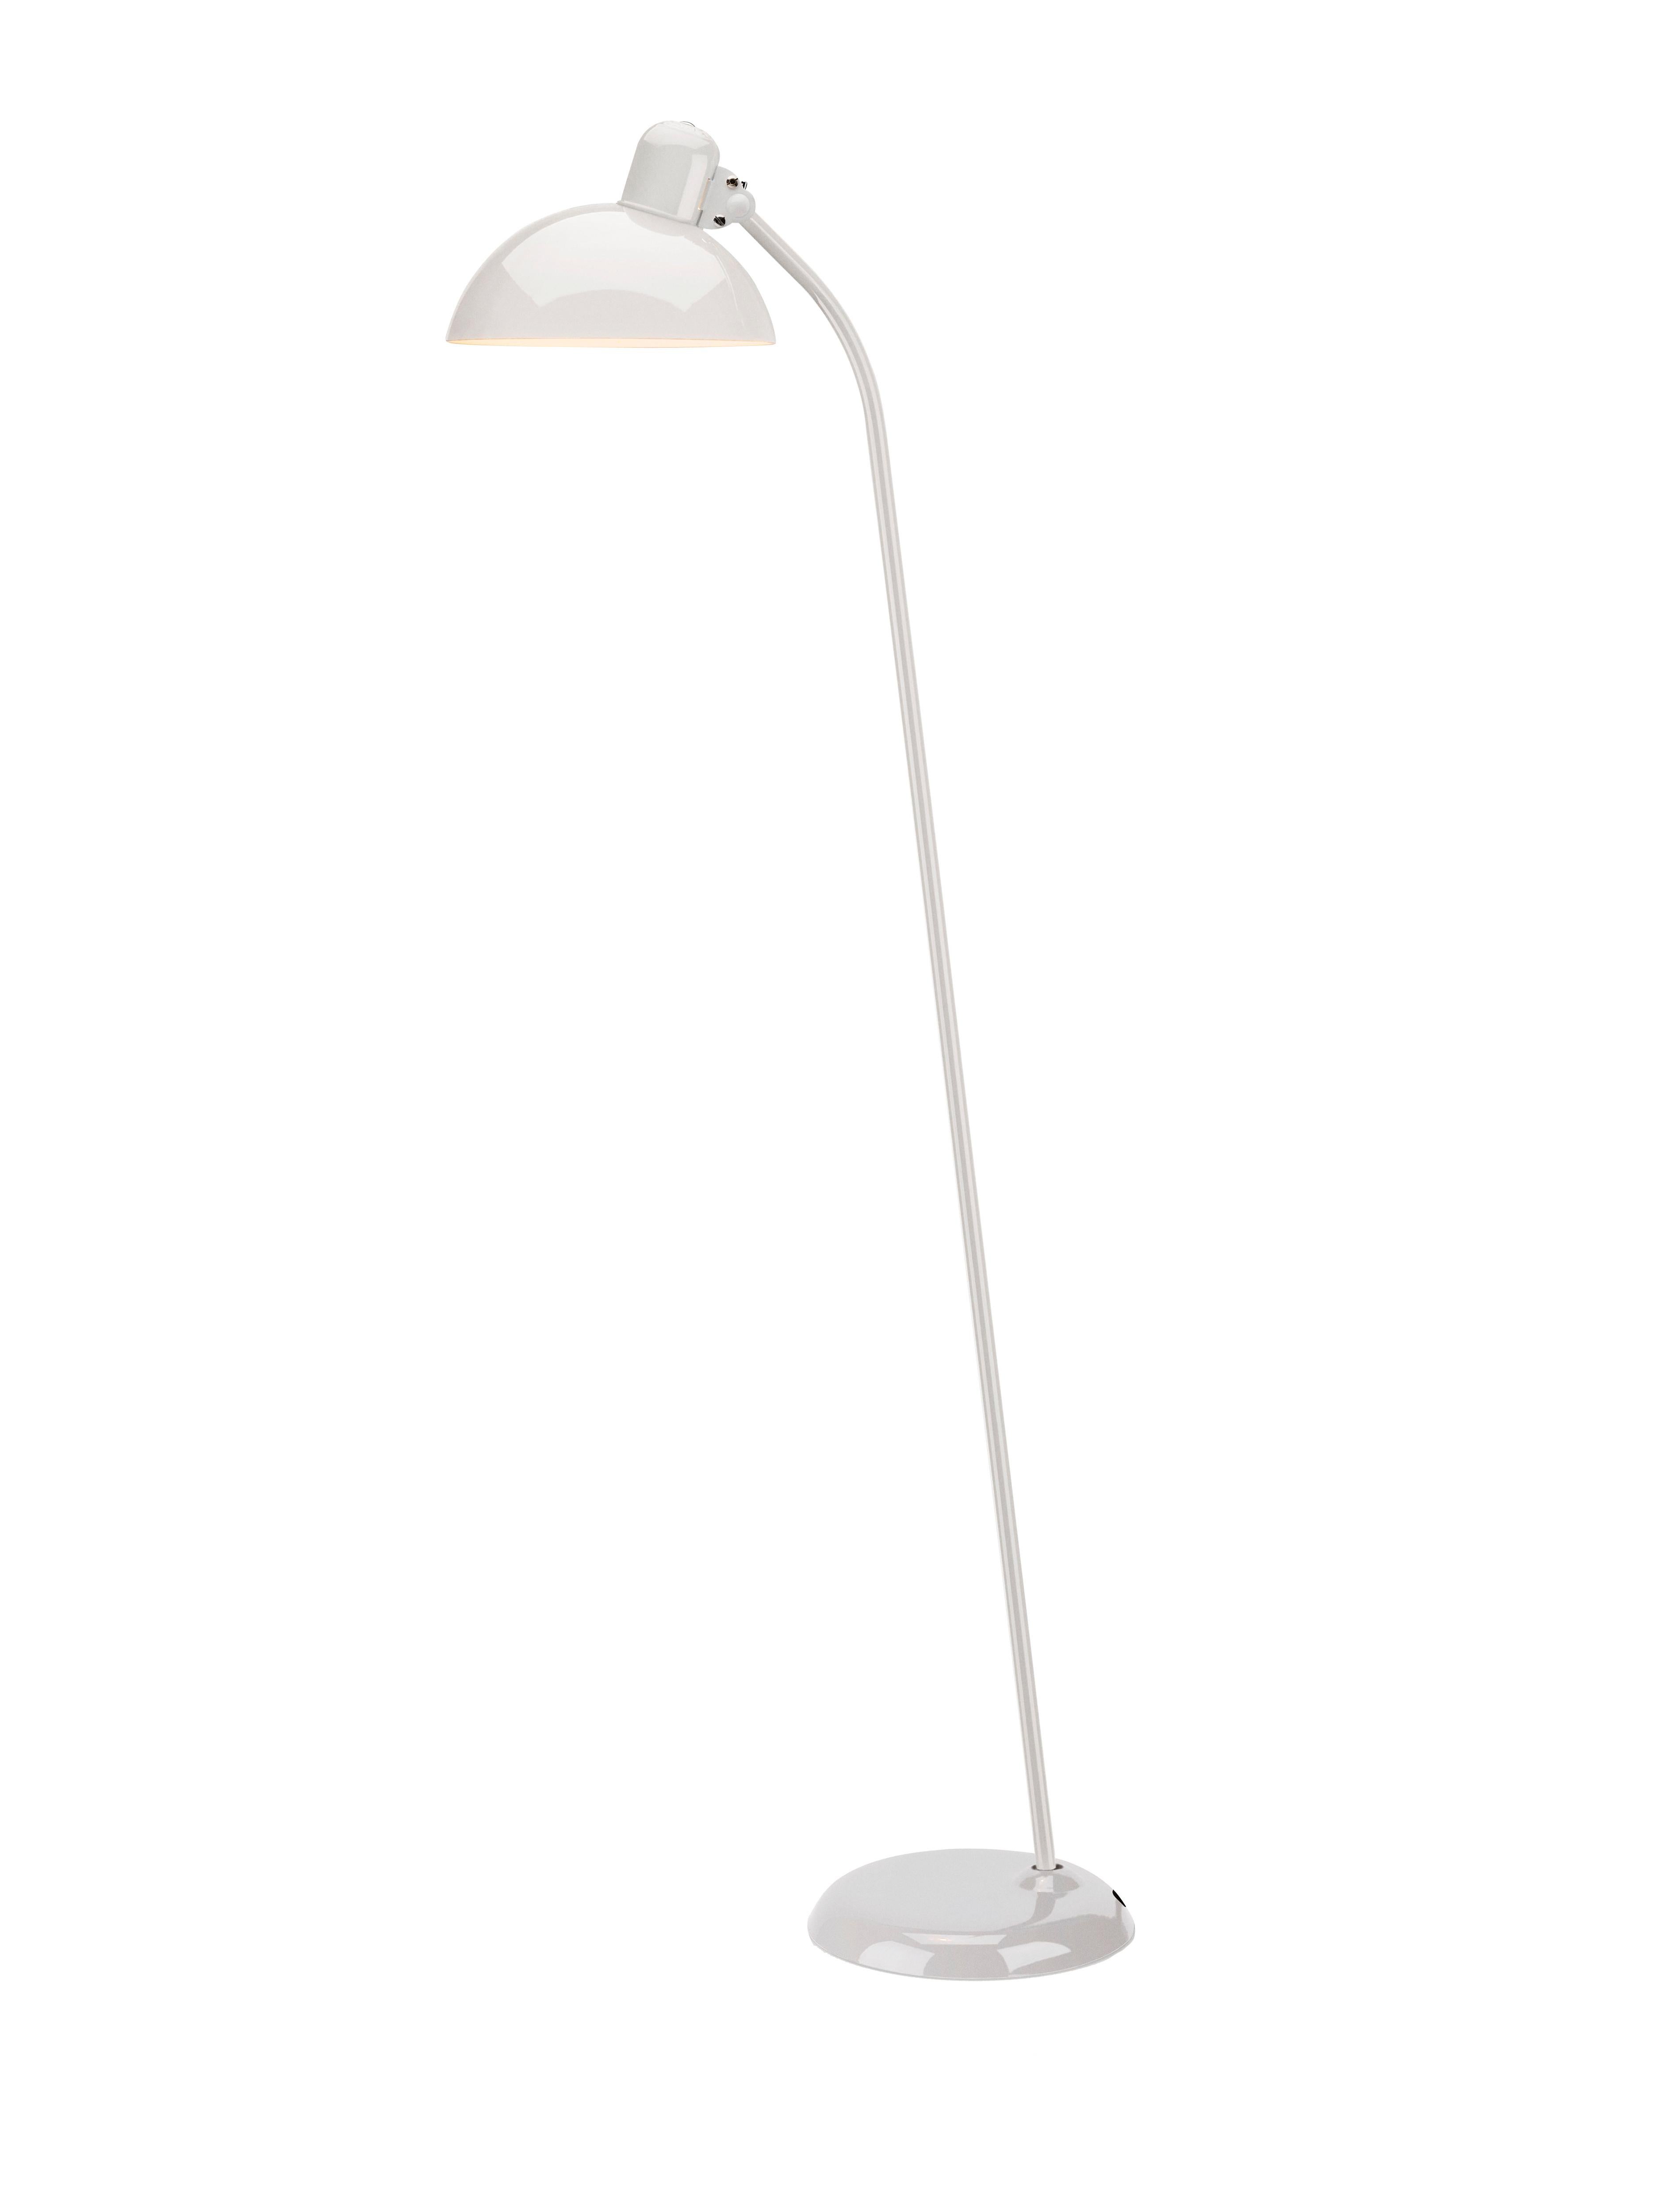 Christian Dell 'Kaiser Idell 6556-F' Floor Lamp for Fritz Hansen in Matte Black For Sale 11